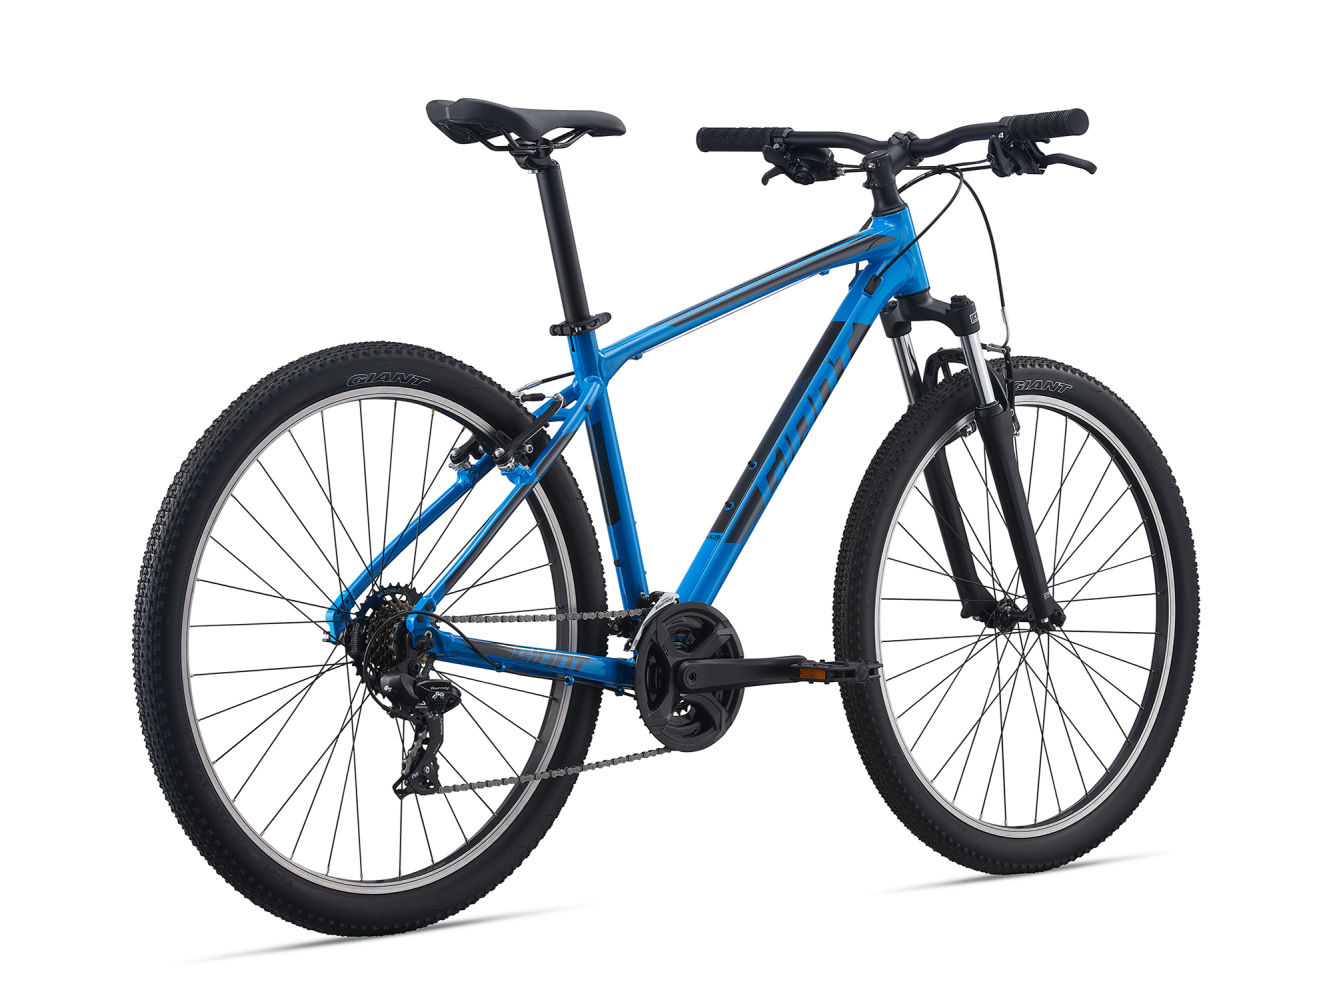 Велосипед Giant ATX 27.5 (2021)